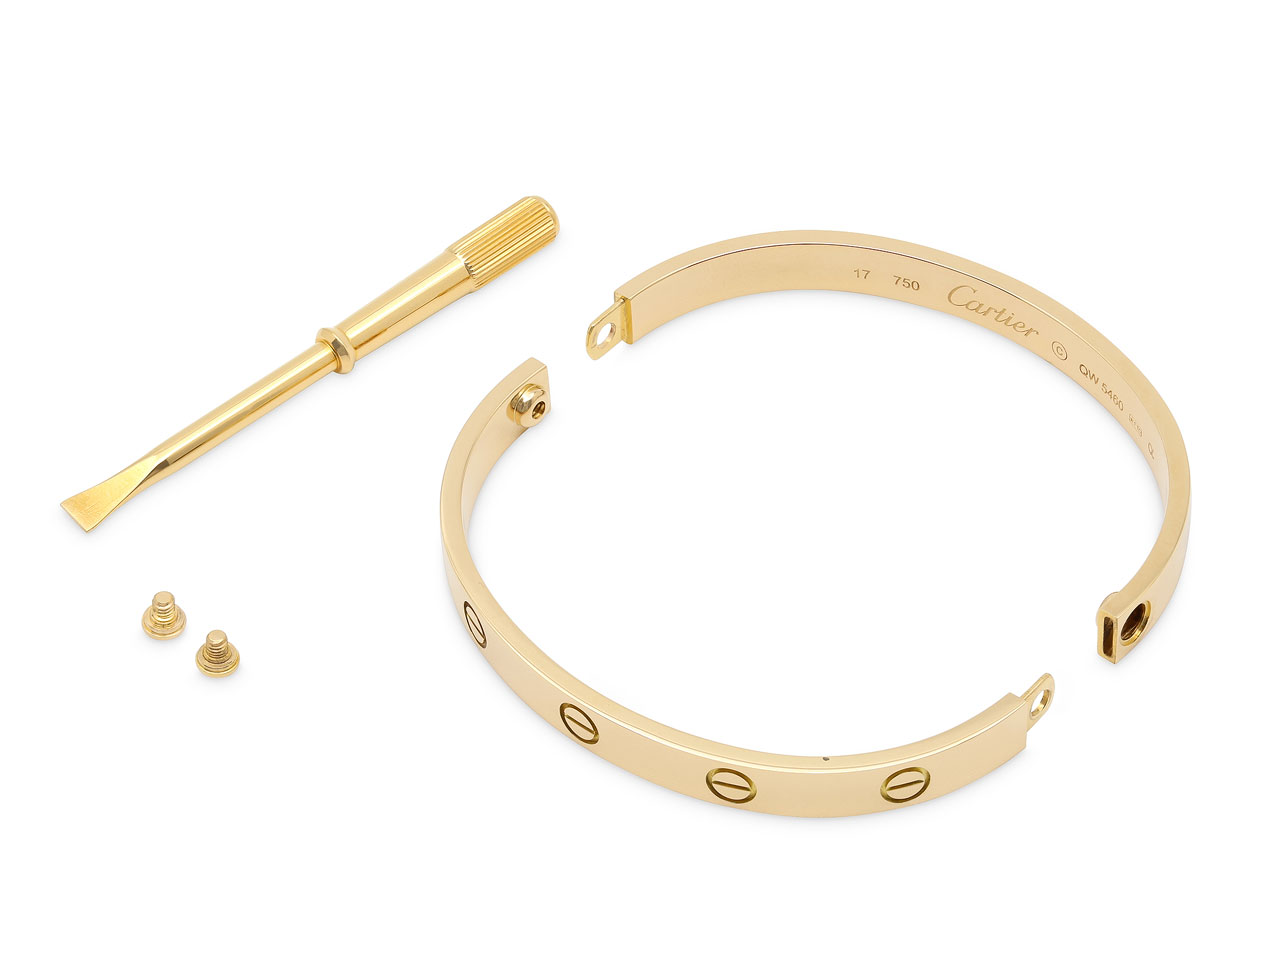 Cartier 'Love' Bracelet in 18K Yellow Gold, Size 17